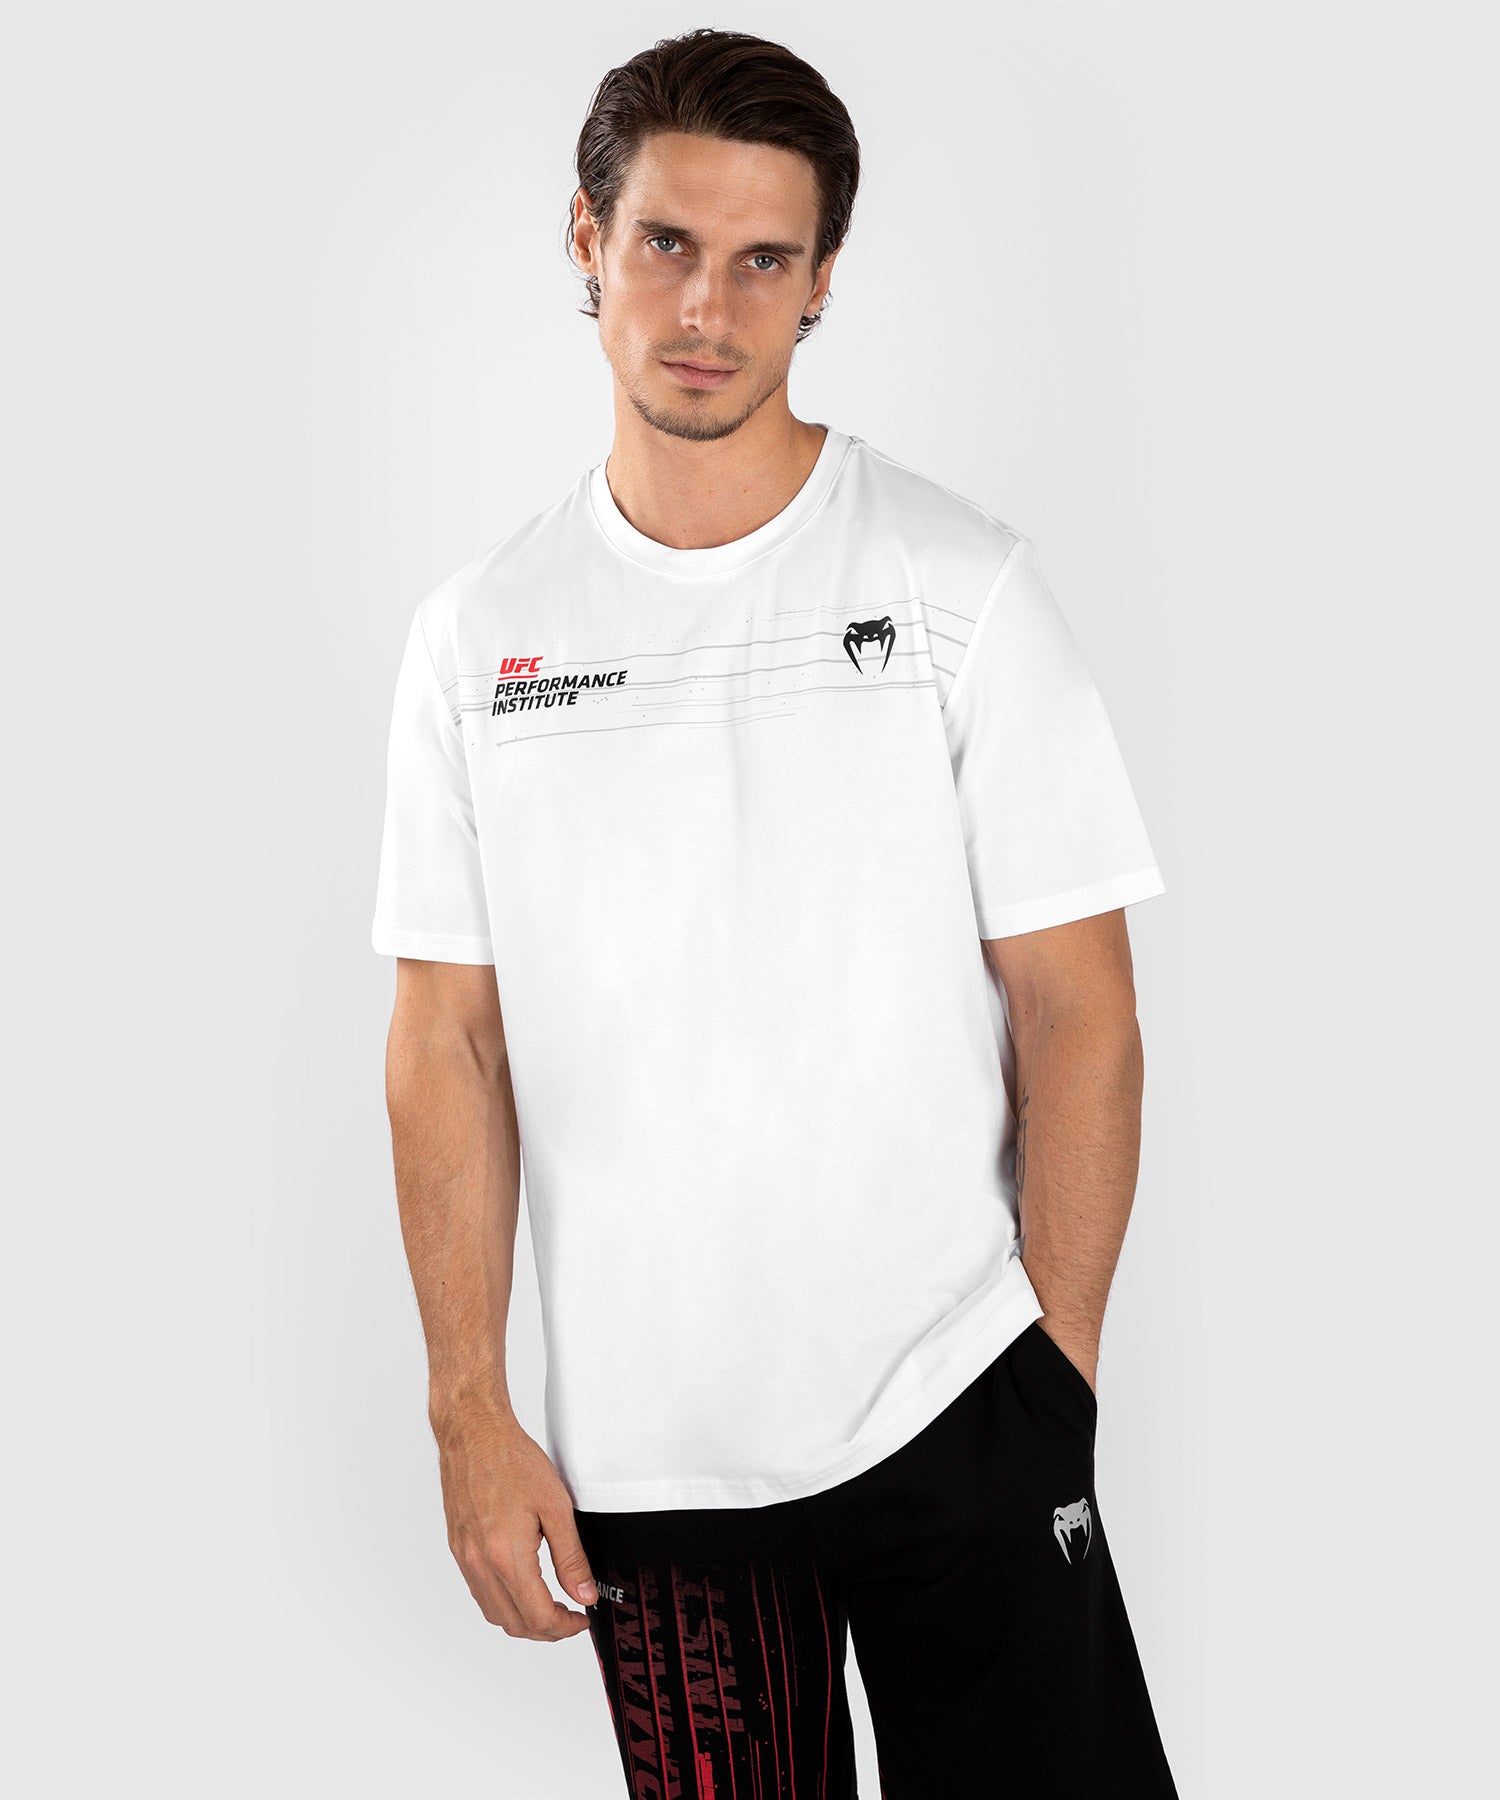 UFC Venum Performance Institute 2.0 Camiseta para Hombre - Blanca